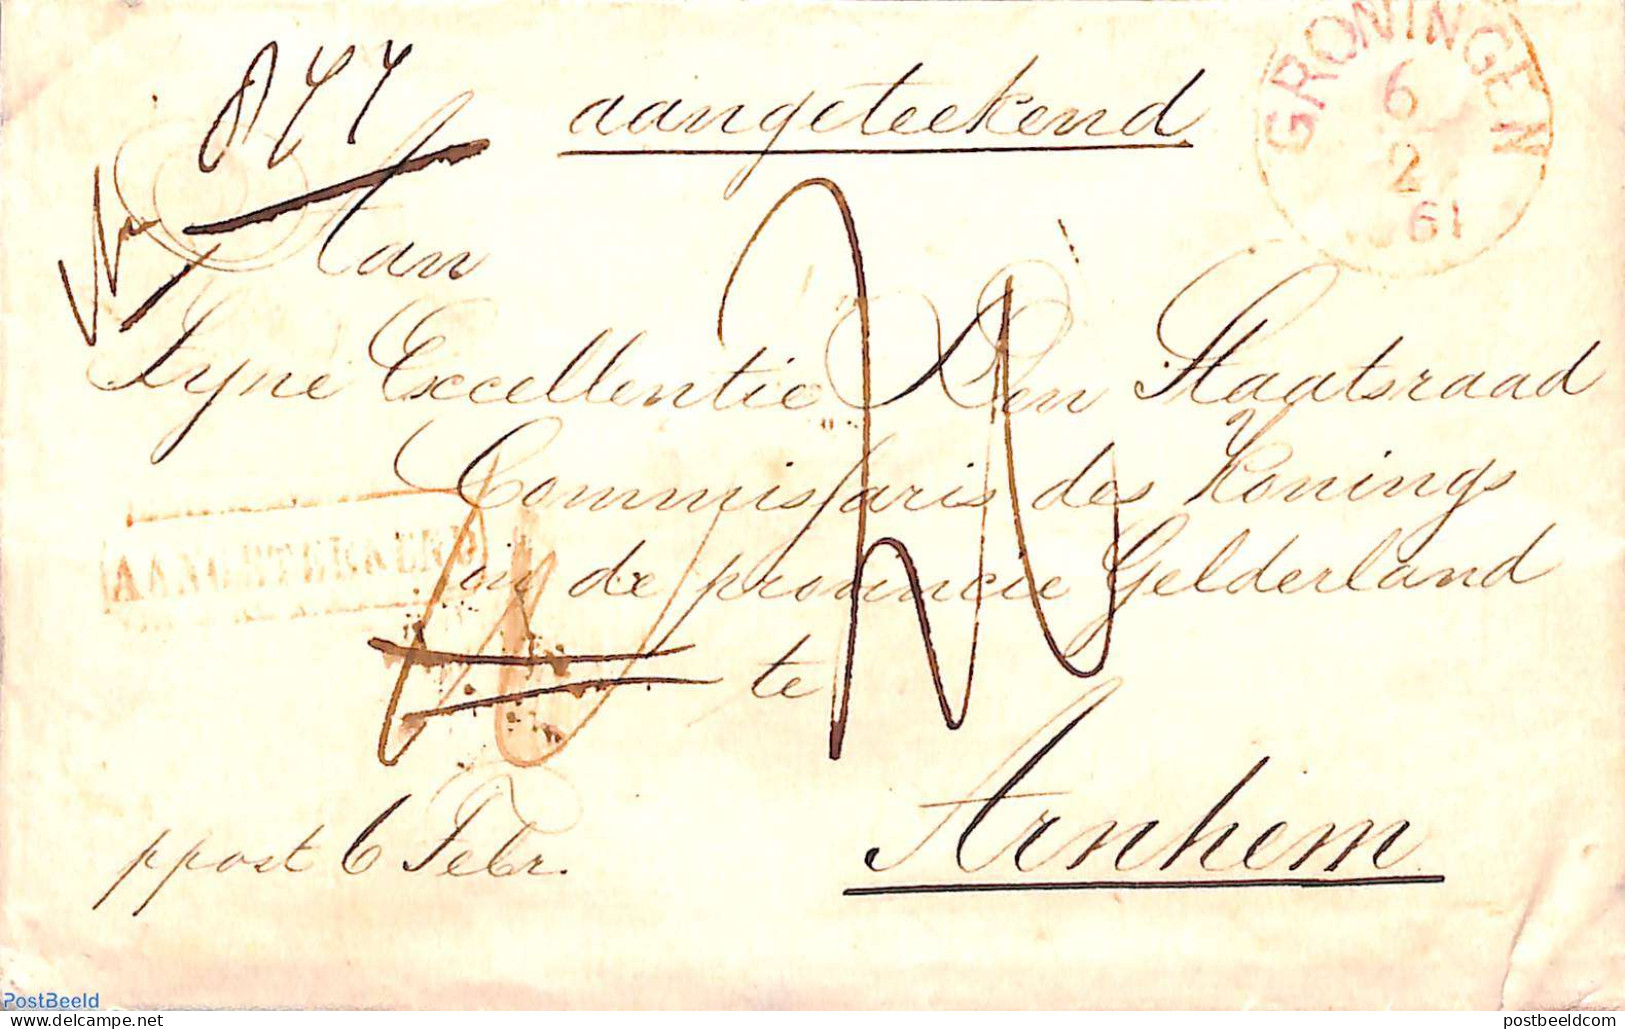 Netherlands 1861 Registered Letter From Groningen To Arnhem , Postal History - Brieven En Documenten